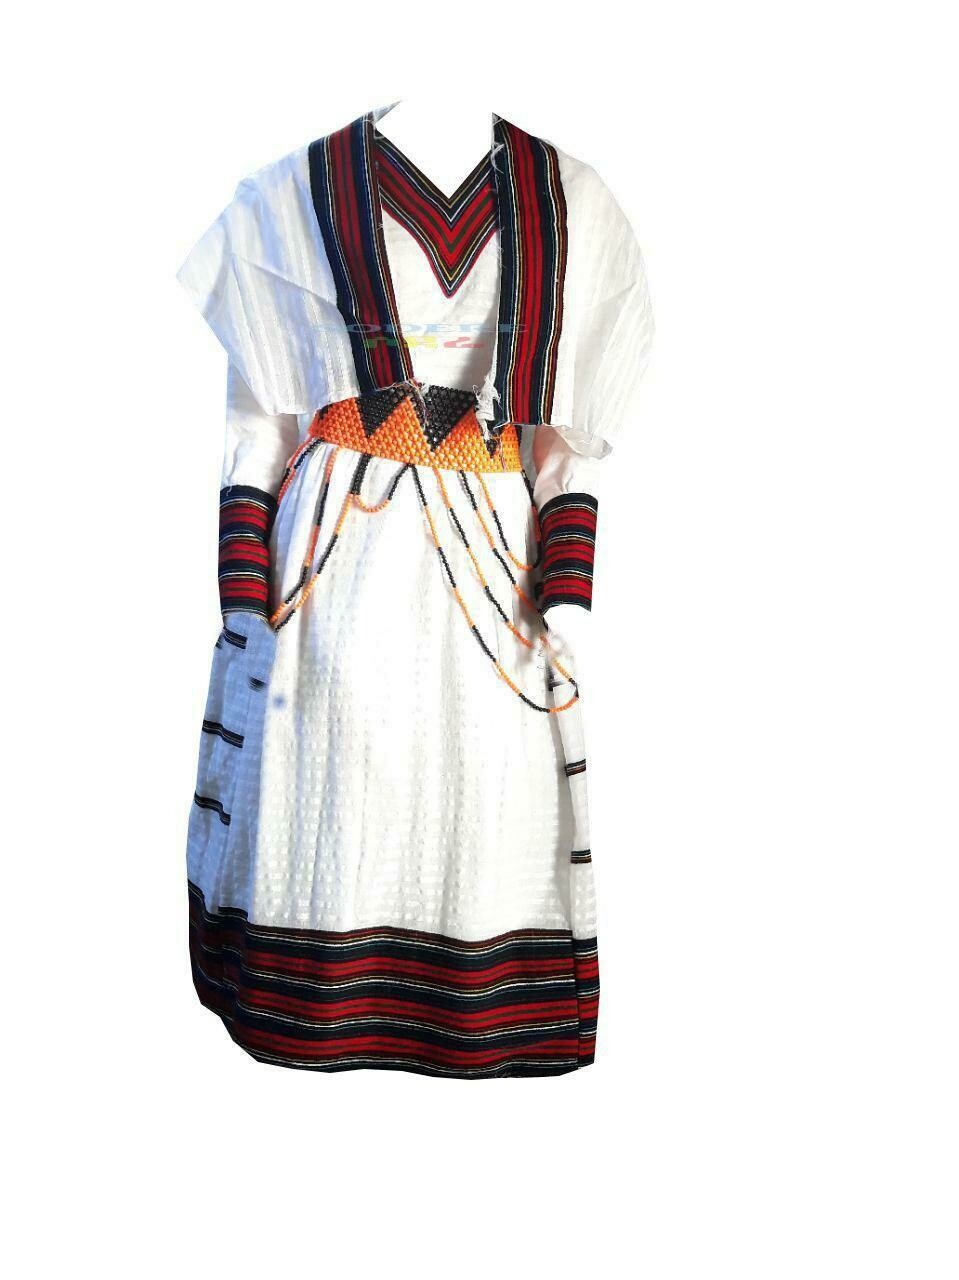 የኦሮሞ ባህላዊ ልብስ Oromo Traditional Cloth